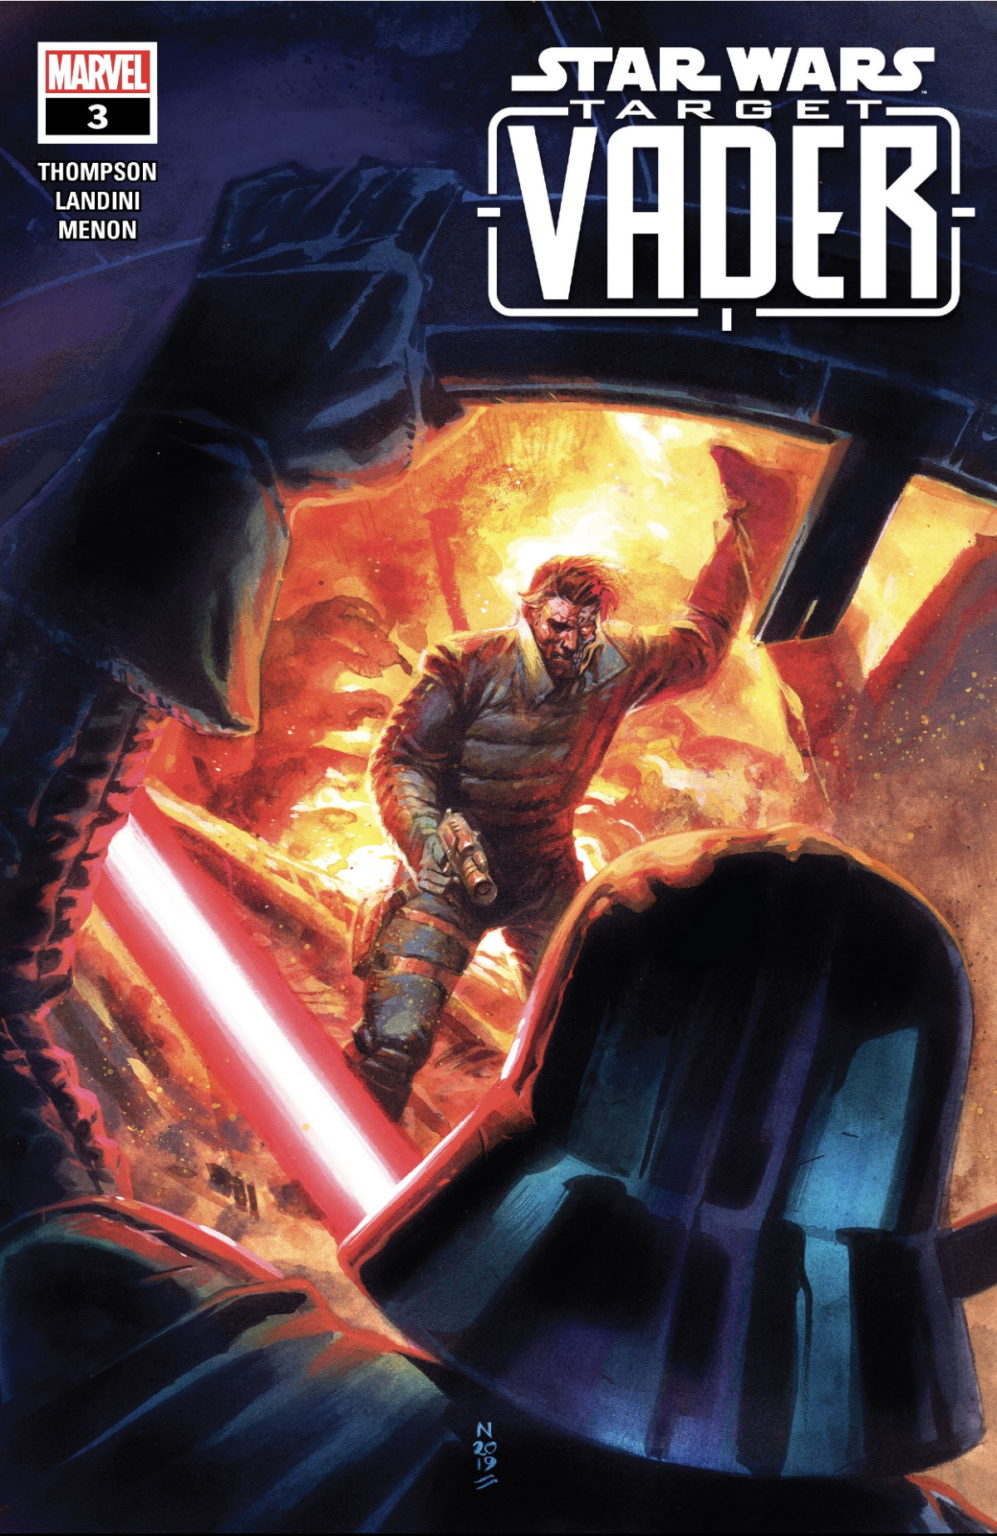 Target Vader #3 Review (Marvel Star Wars) | RetroZap